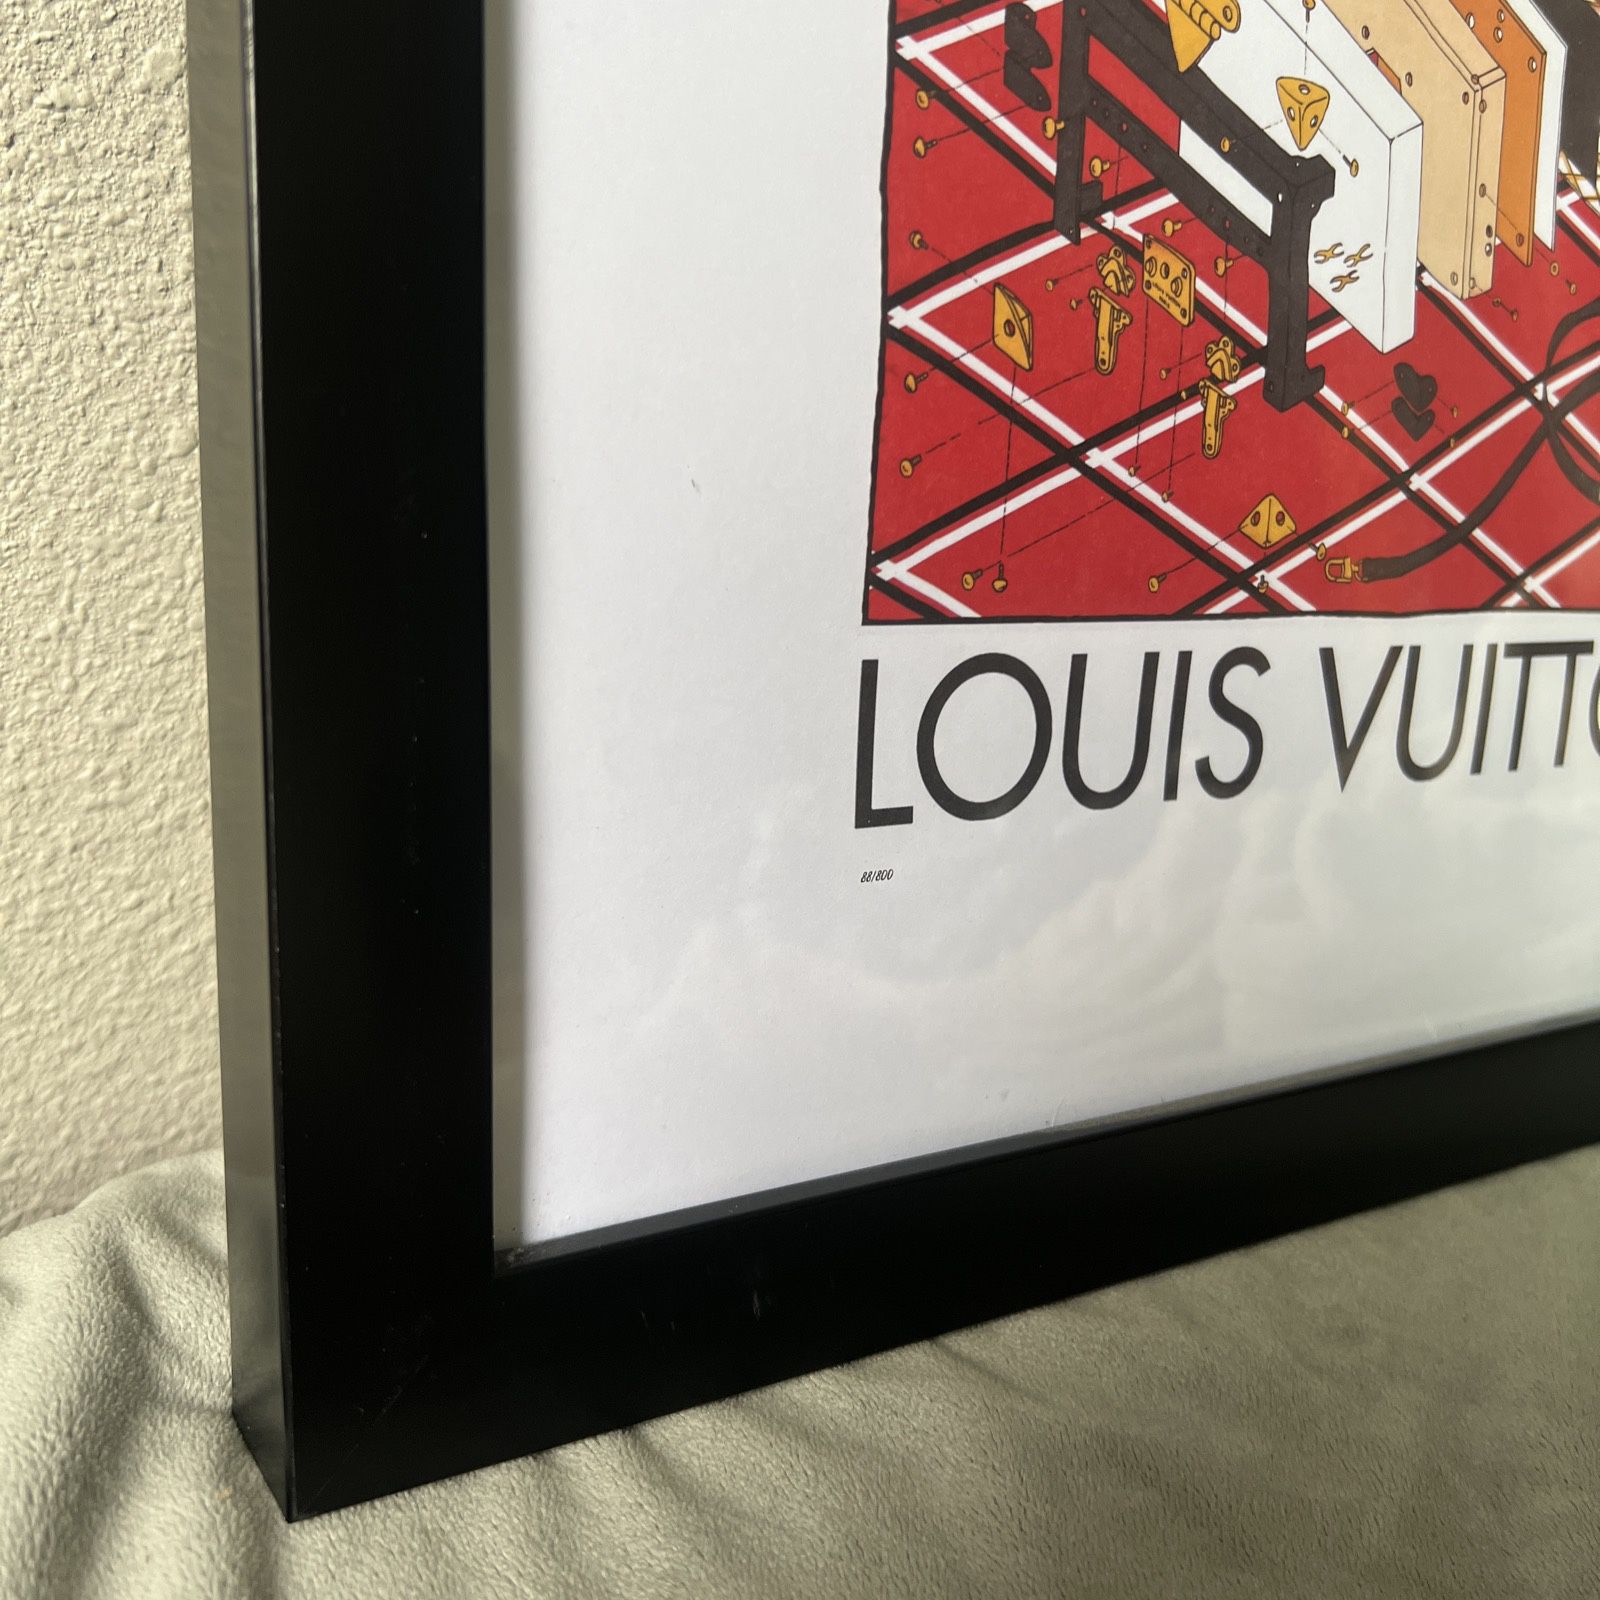 Louis Vuitton FAIRCHILD PARIS Framed art Print Luggage 25/800